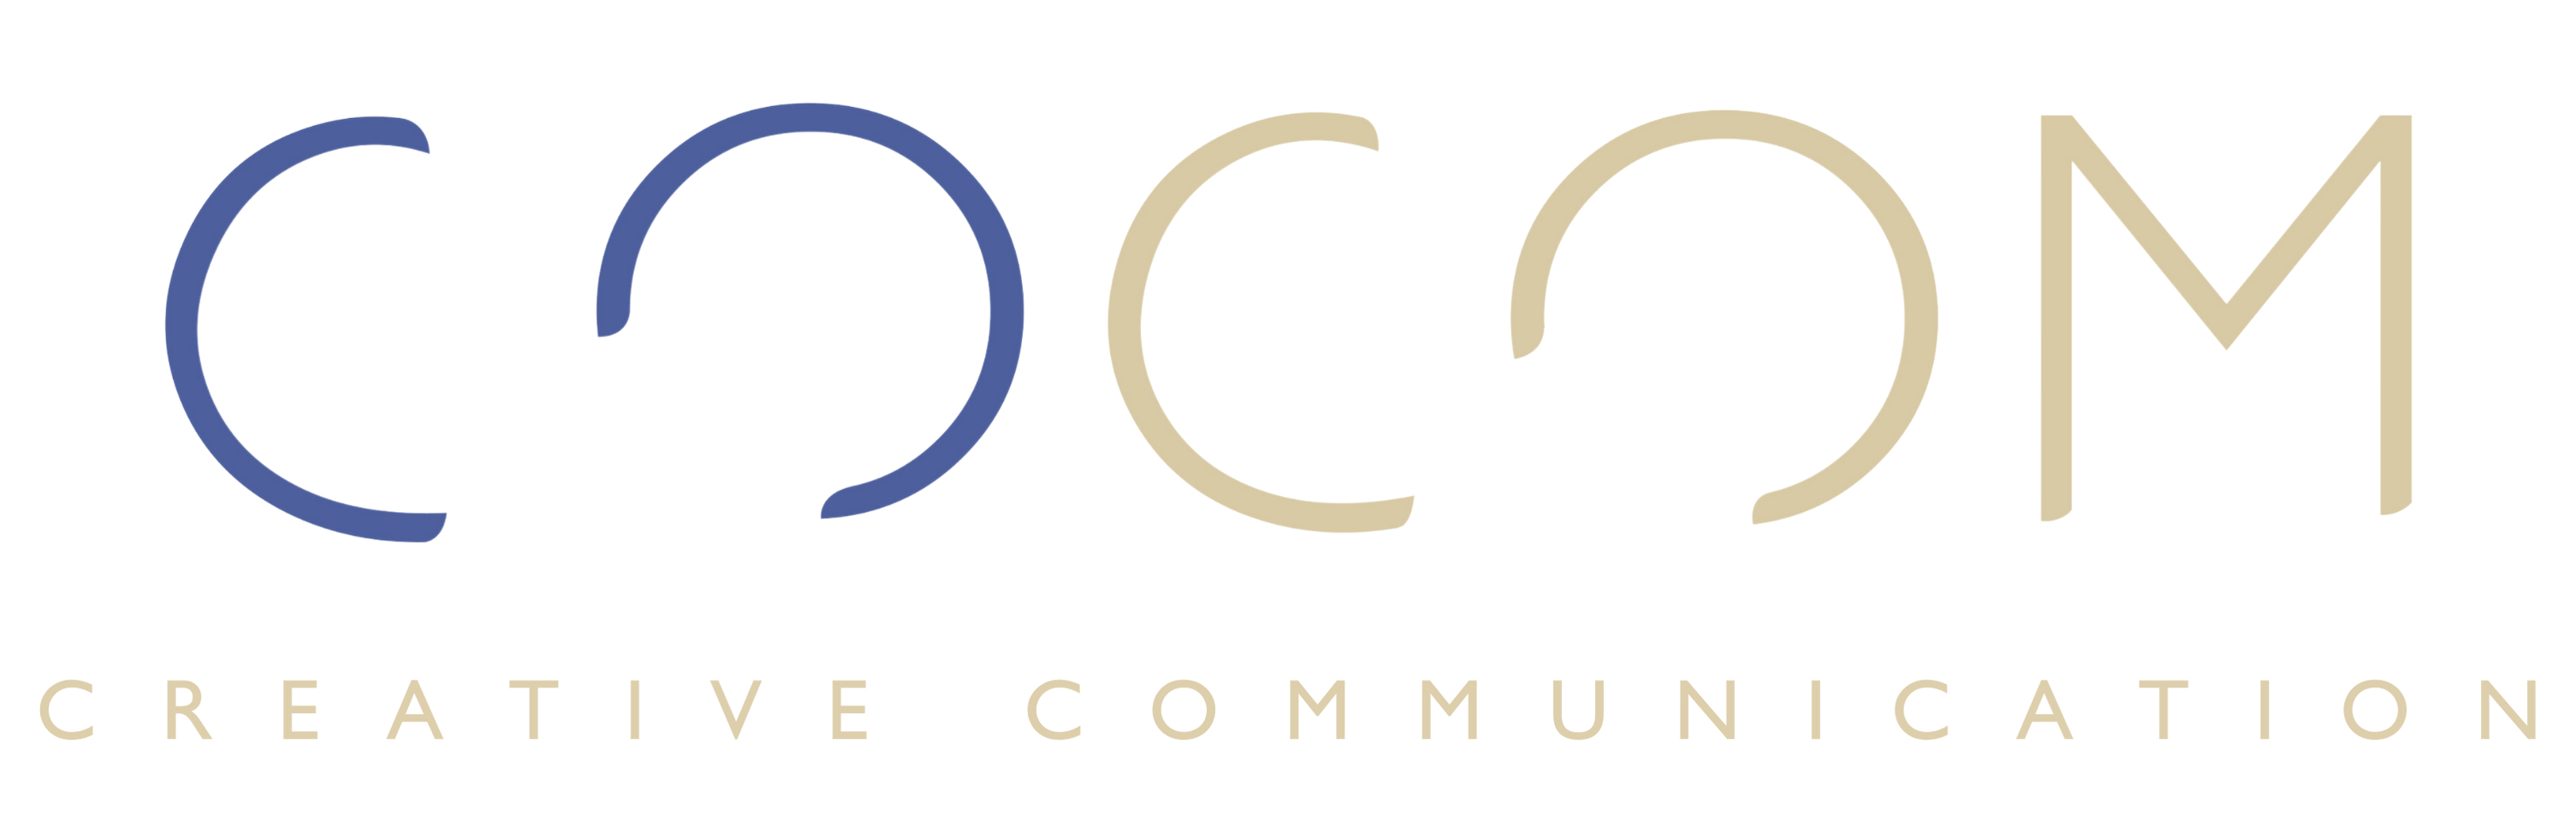 COCOM - Email Signature - Transparent Background